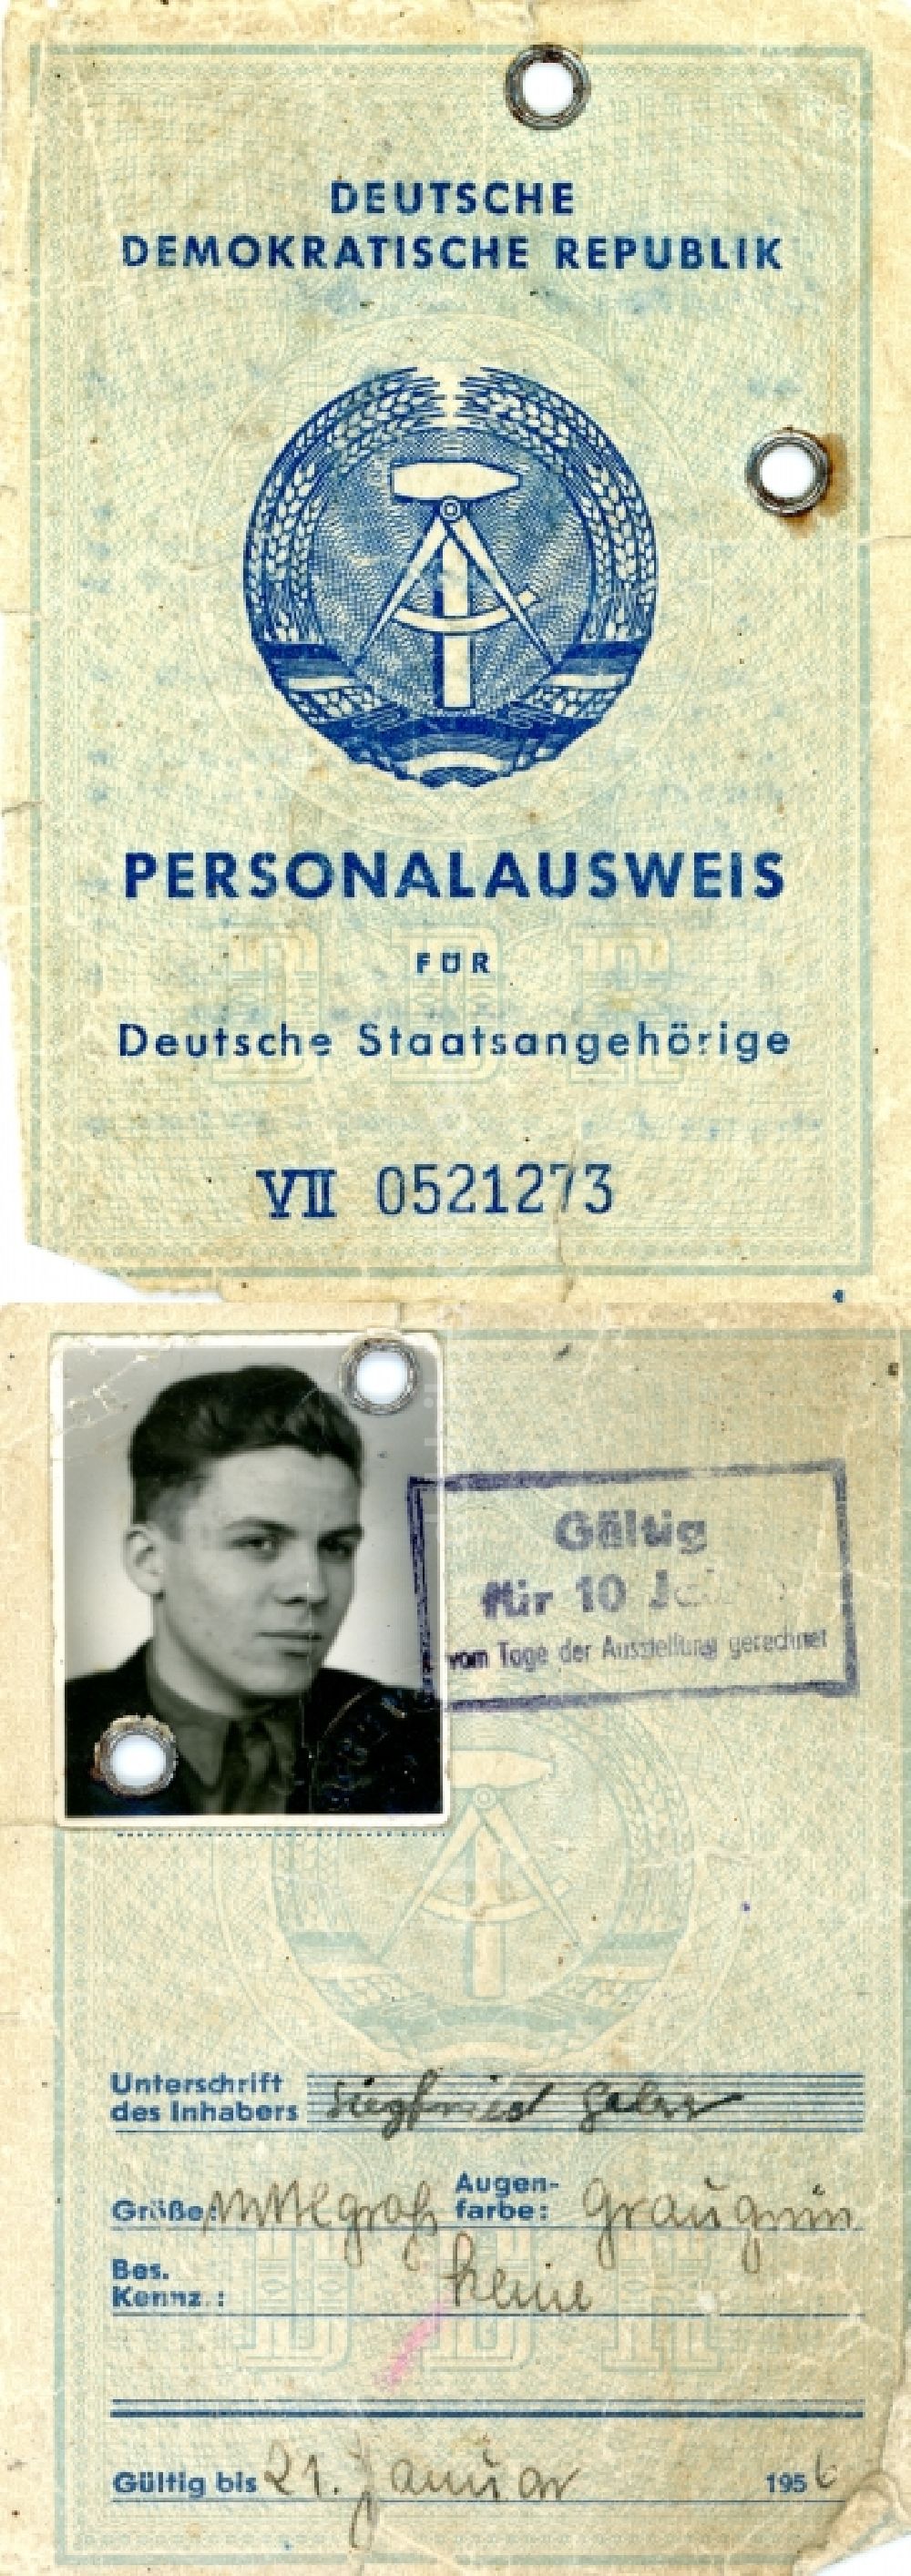 DDR-Fotoarchiv: Halberstadt - Personalausweis für Deutsche Staatsangehörige ausgestellt in Halberstadt im Bundesland Sachsen-Anhalt auf dem Gebiet der ehemaligen DDR, Deutsche Demokratische Republik